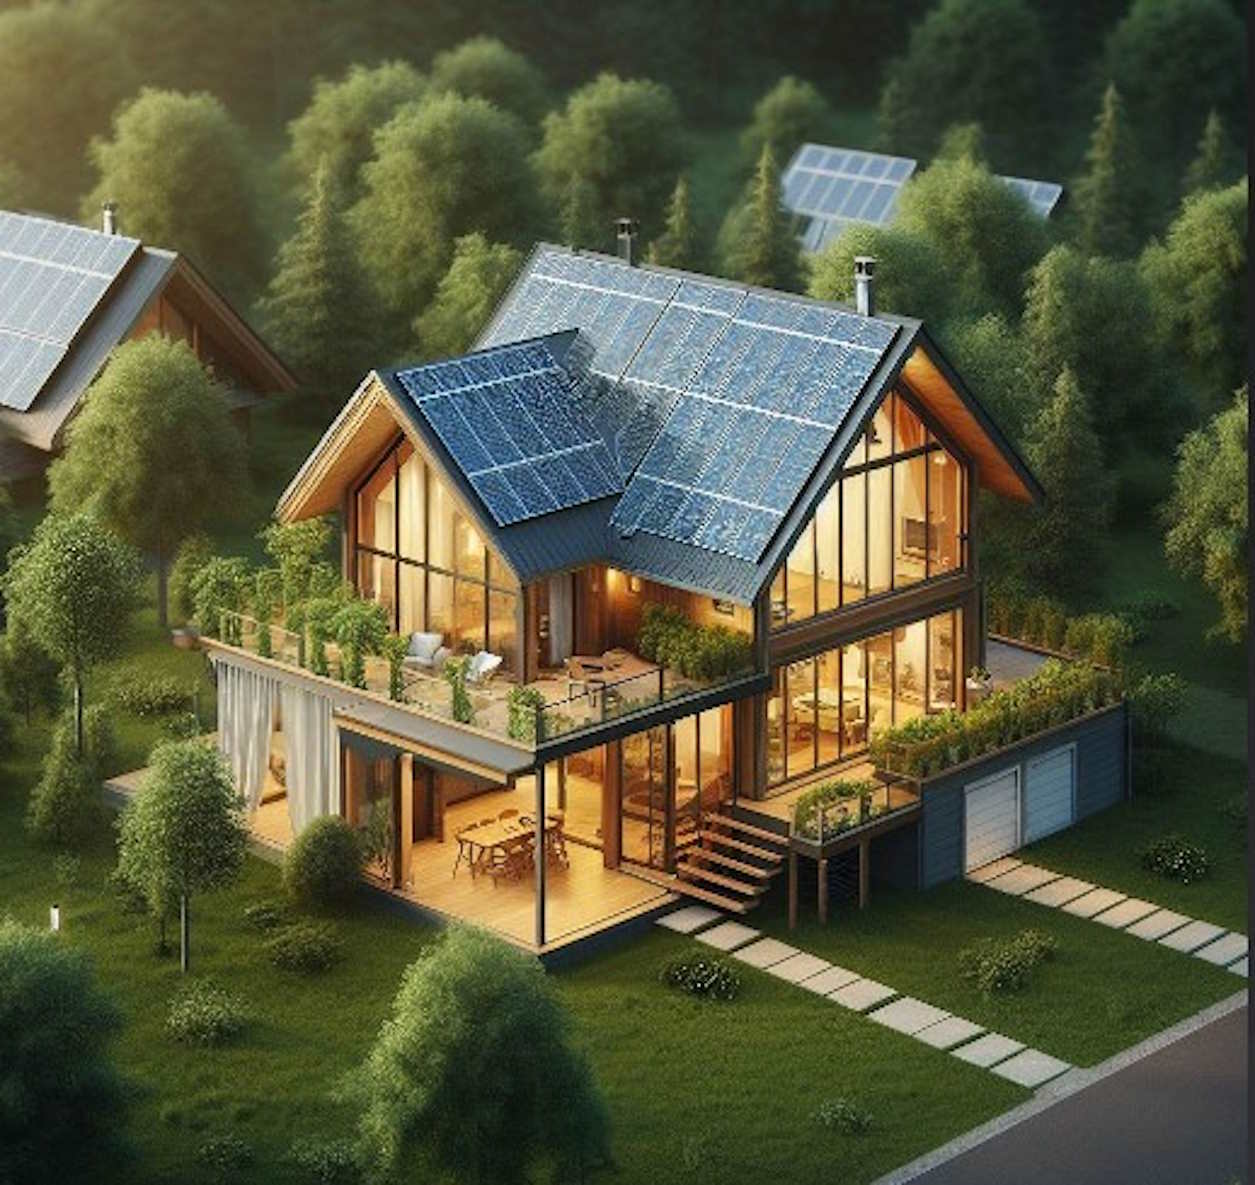 Casa con placas solares